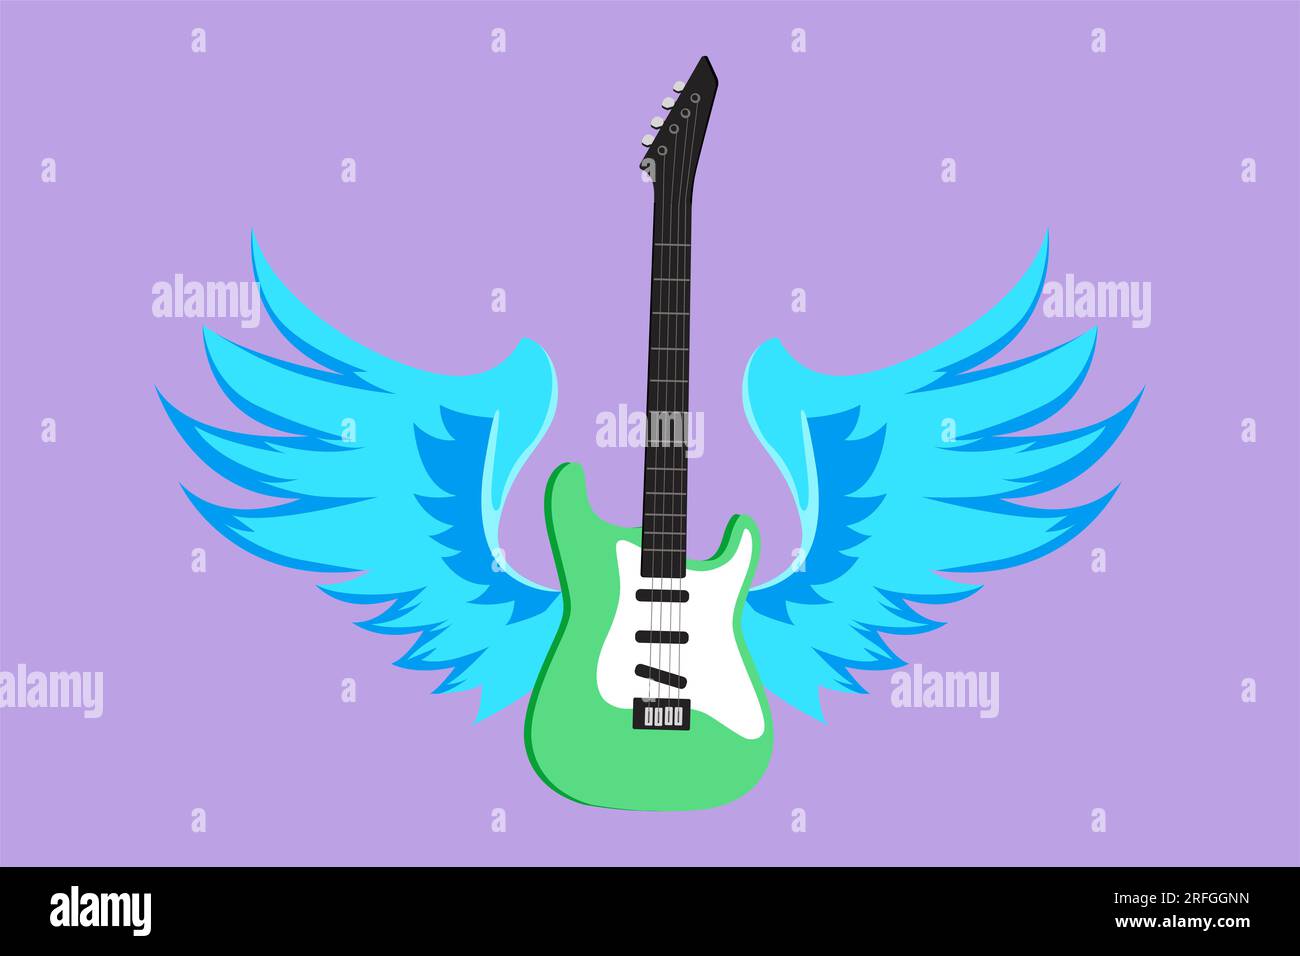 Dessin de conception plate graphique de guitare électrique avec des ailes. Label vintage, symbole, guitare logotype pour la performance musicale. Signe de roche, geste pour musi Banque D'Images